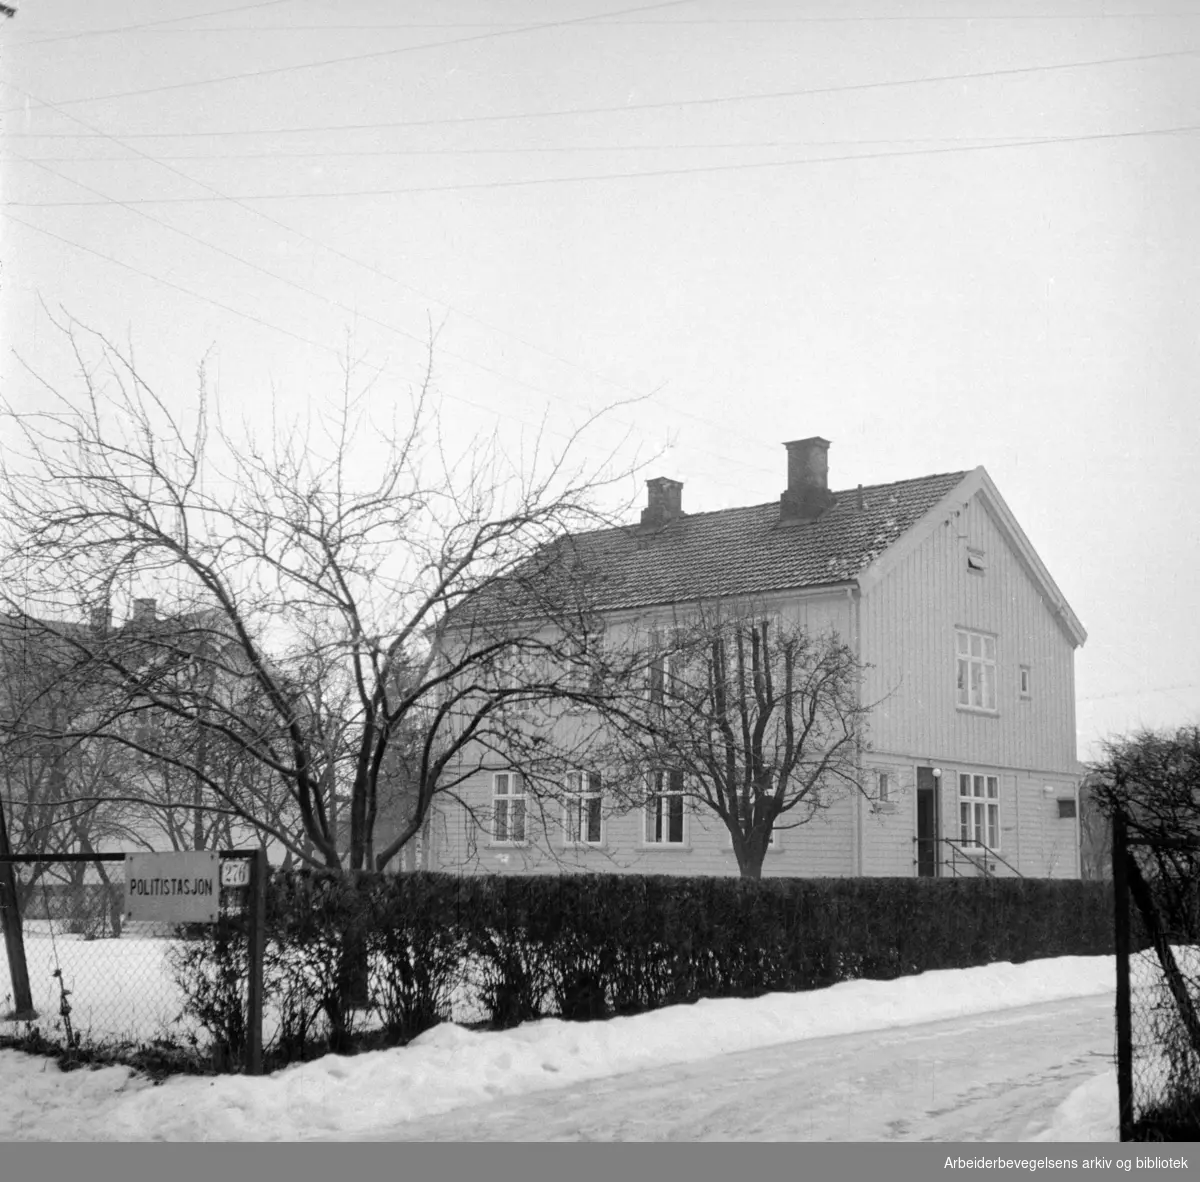 Nydalen Politistasjon i Maridalsveien 276. Januar 1957